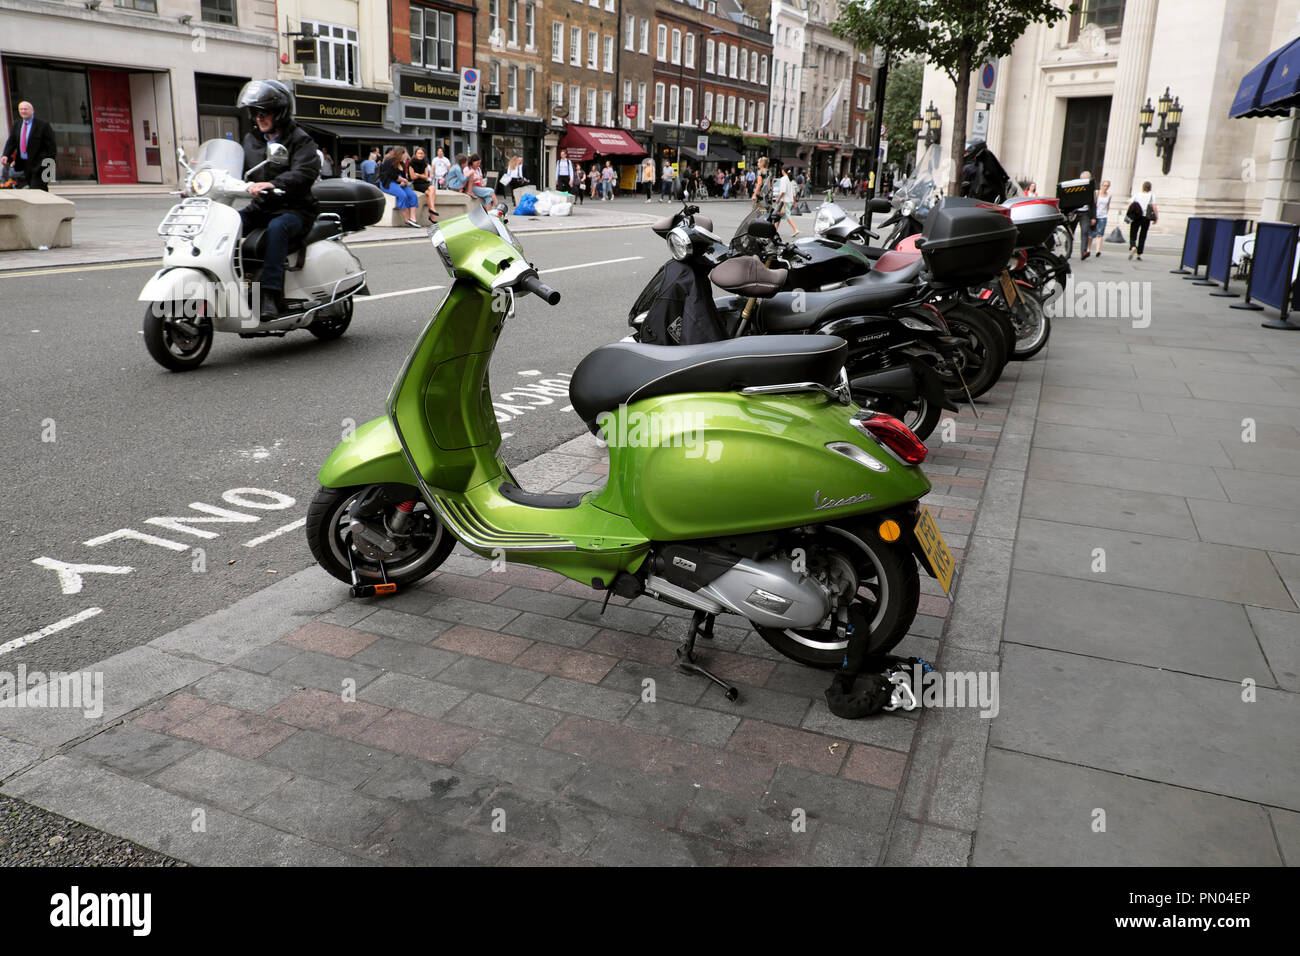 Moto Vespa verte stationnée sur Great Queen Street dans le quartier de Covent Garden, London WC2 England UK KATHY DEWITT Banque D'Images